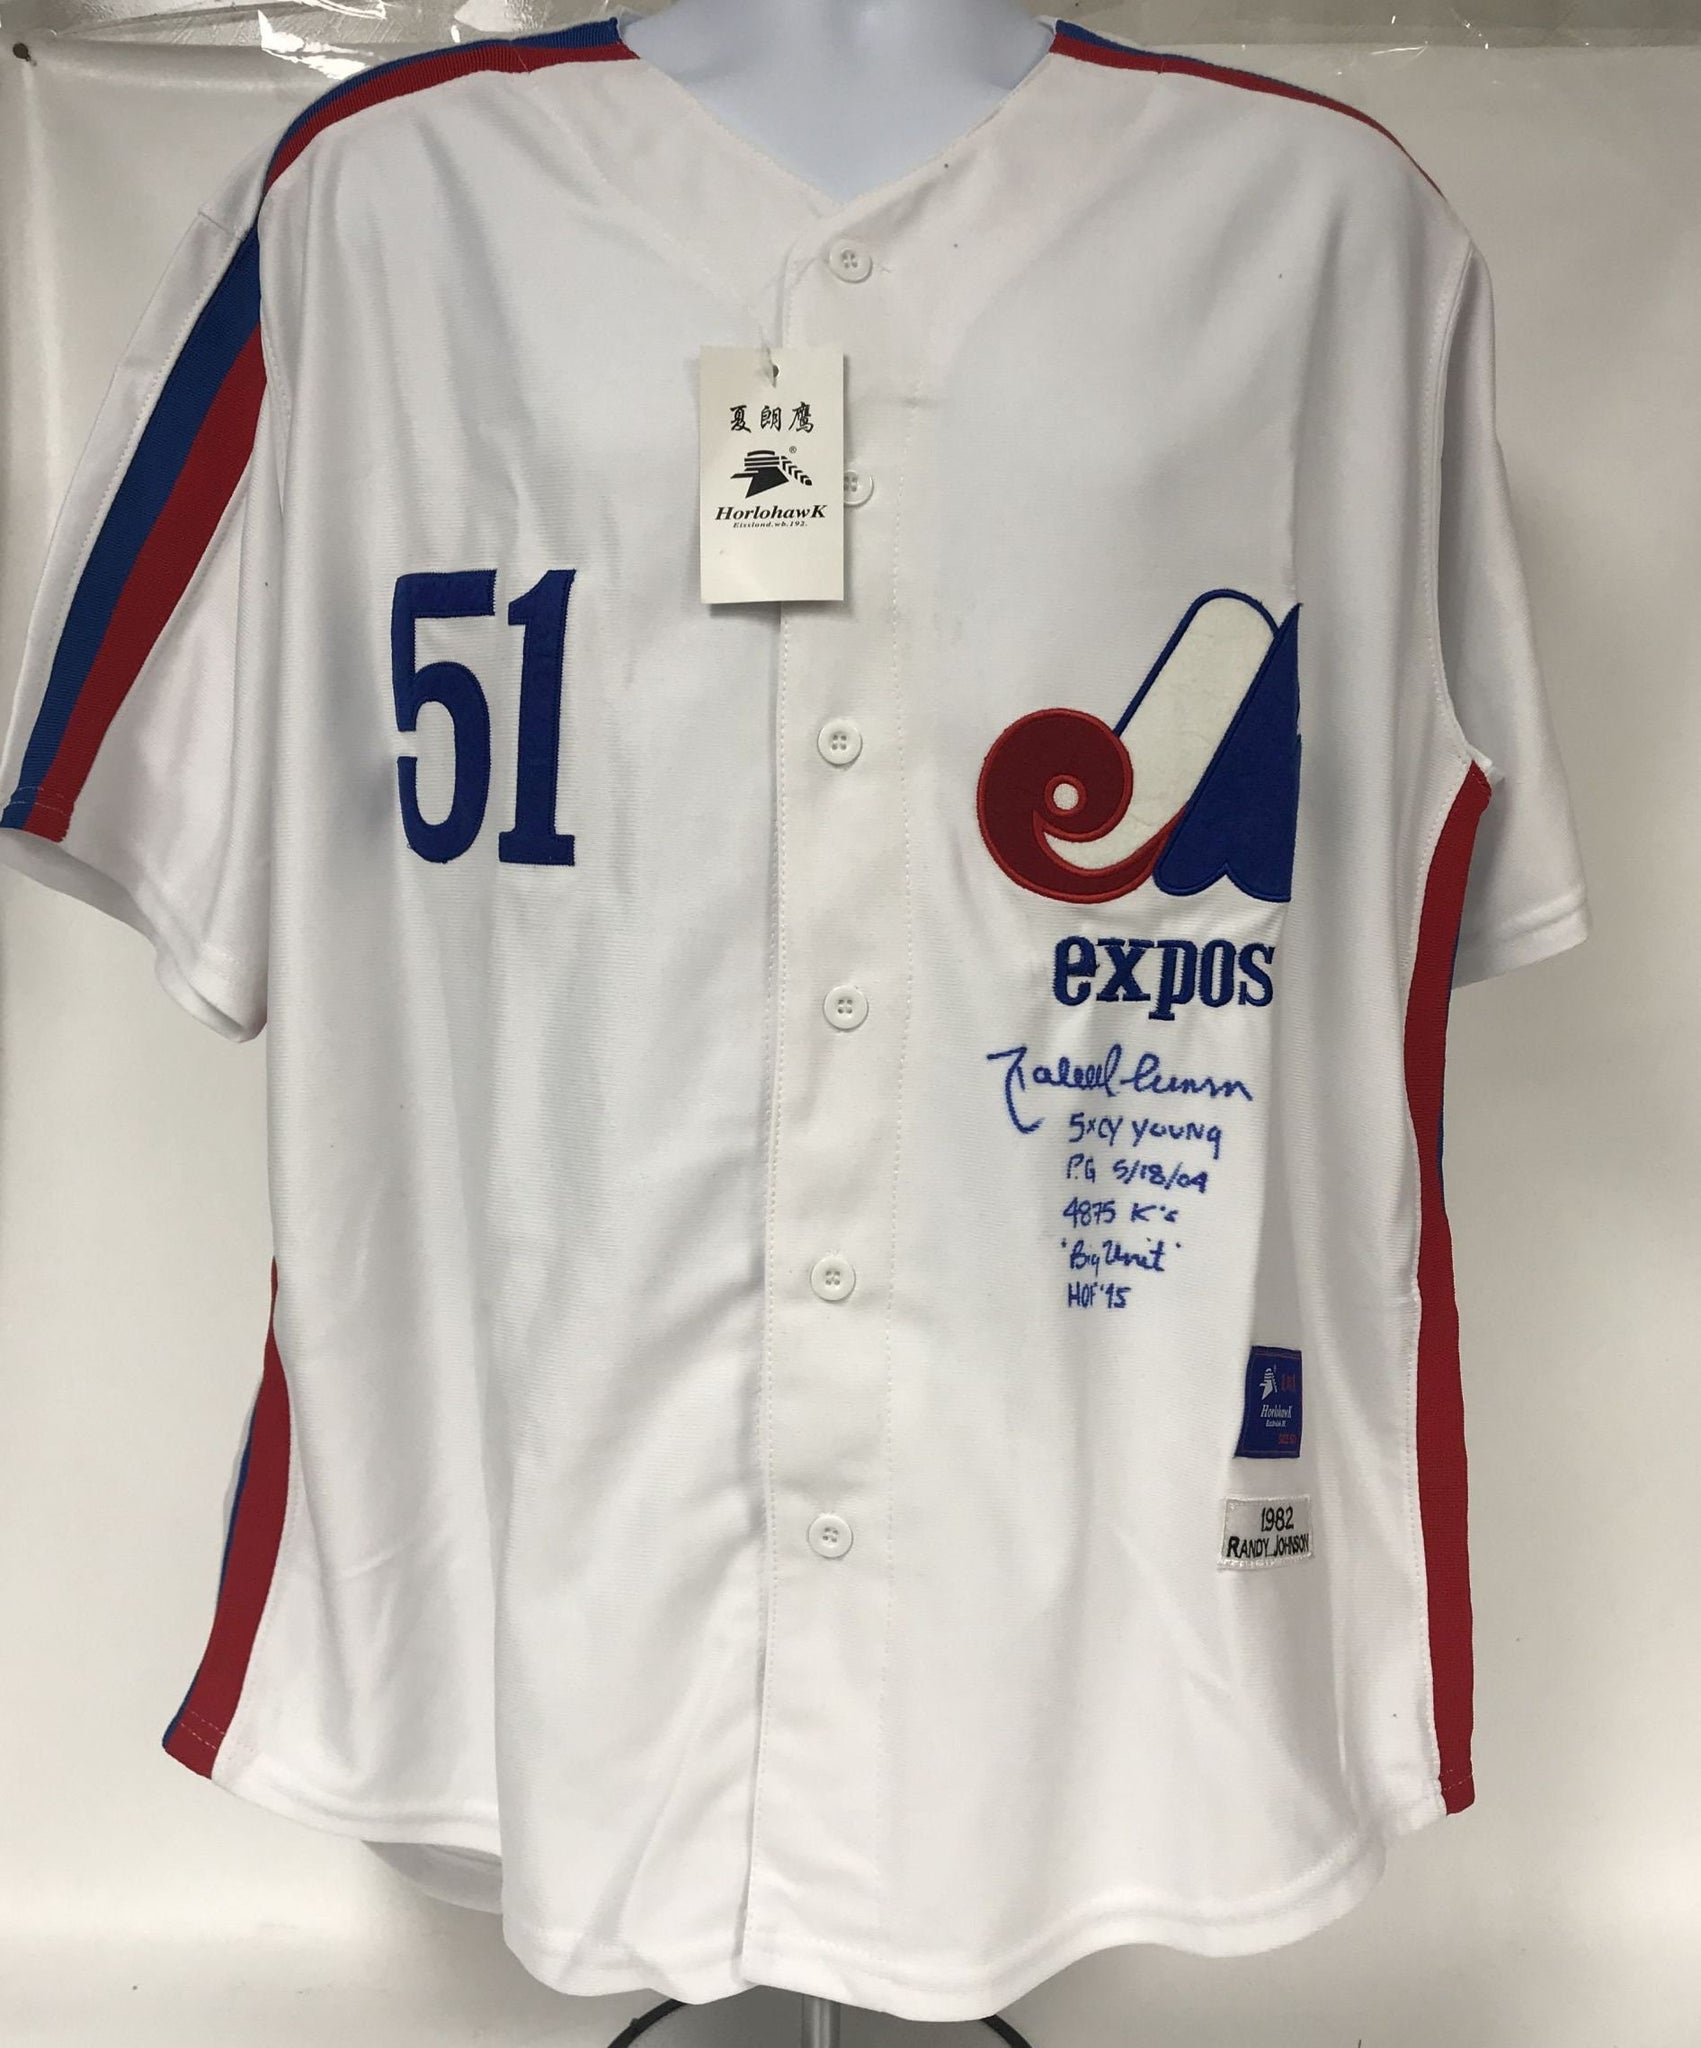 Official Montreal Expos Jerseys, Expos Baseball Jerseys, Uniforms